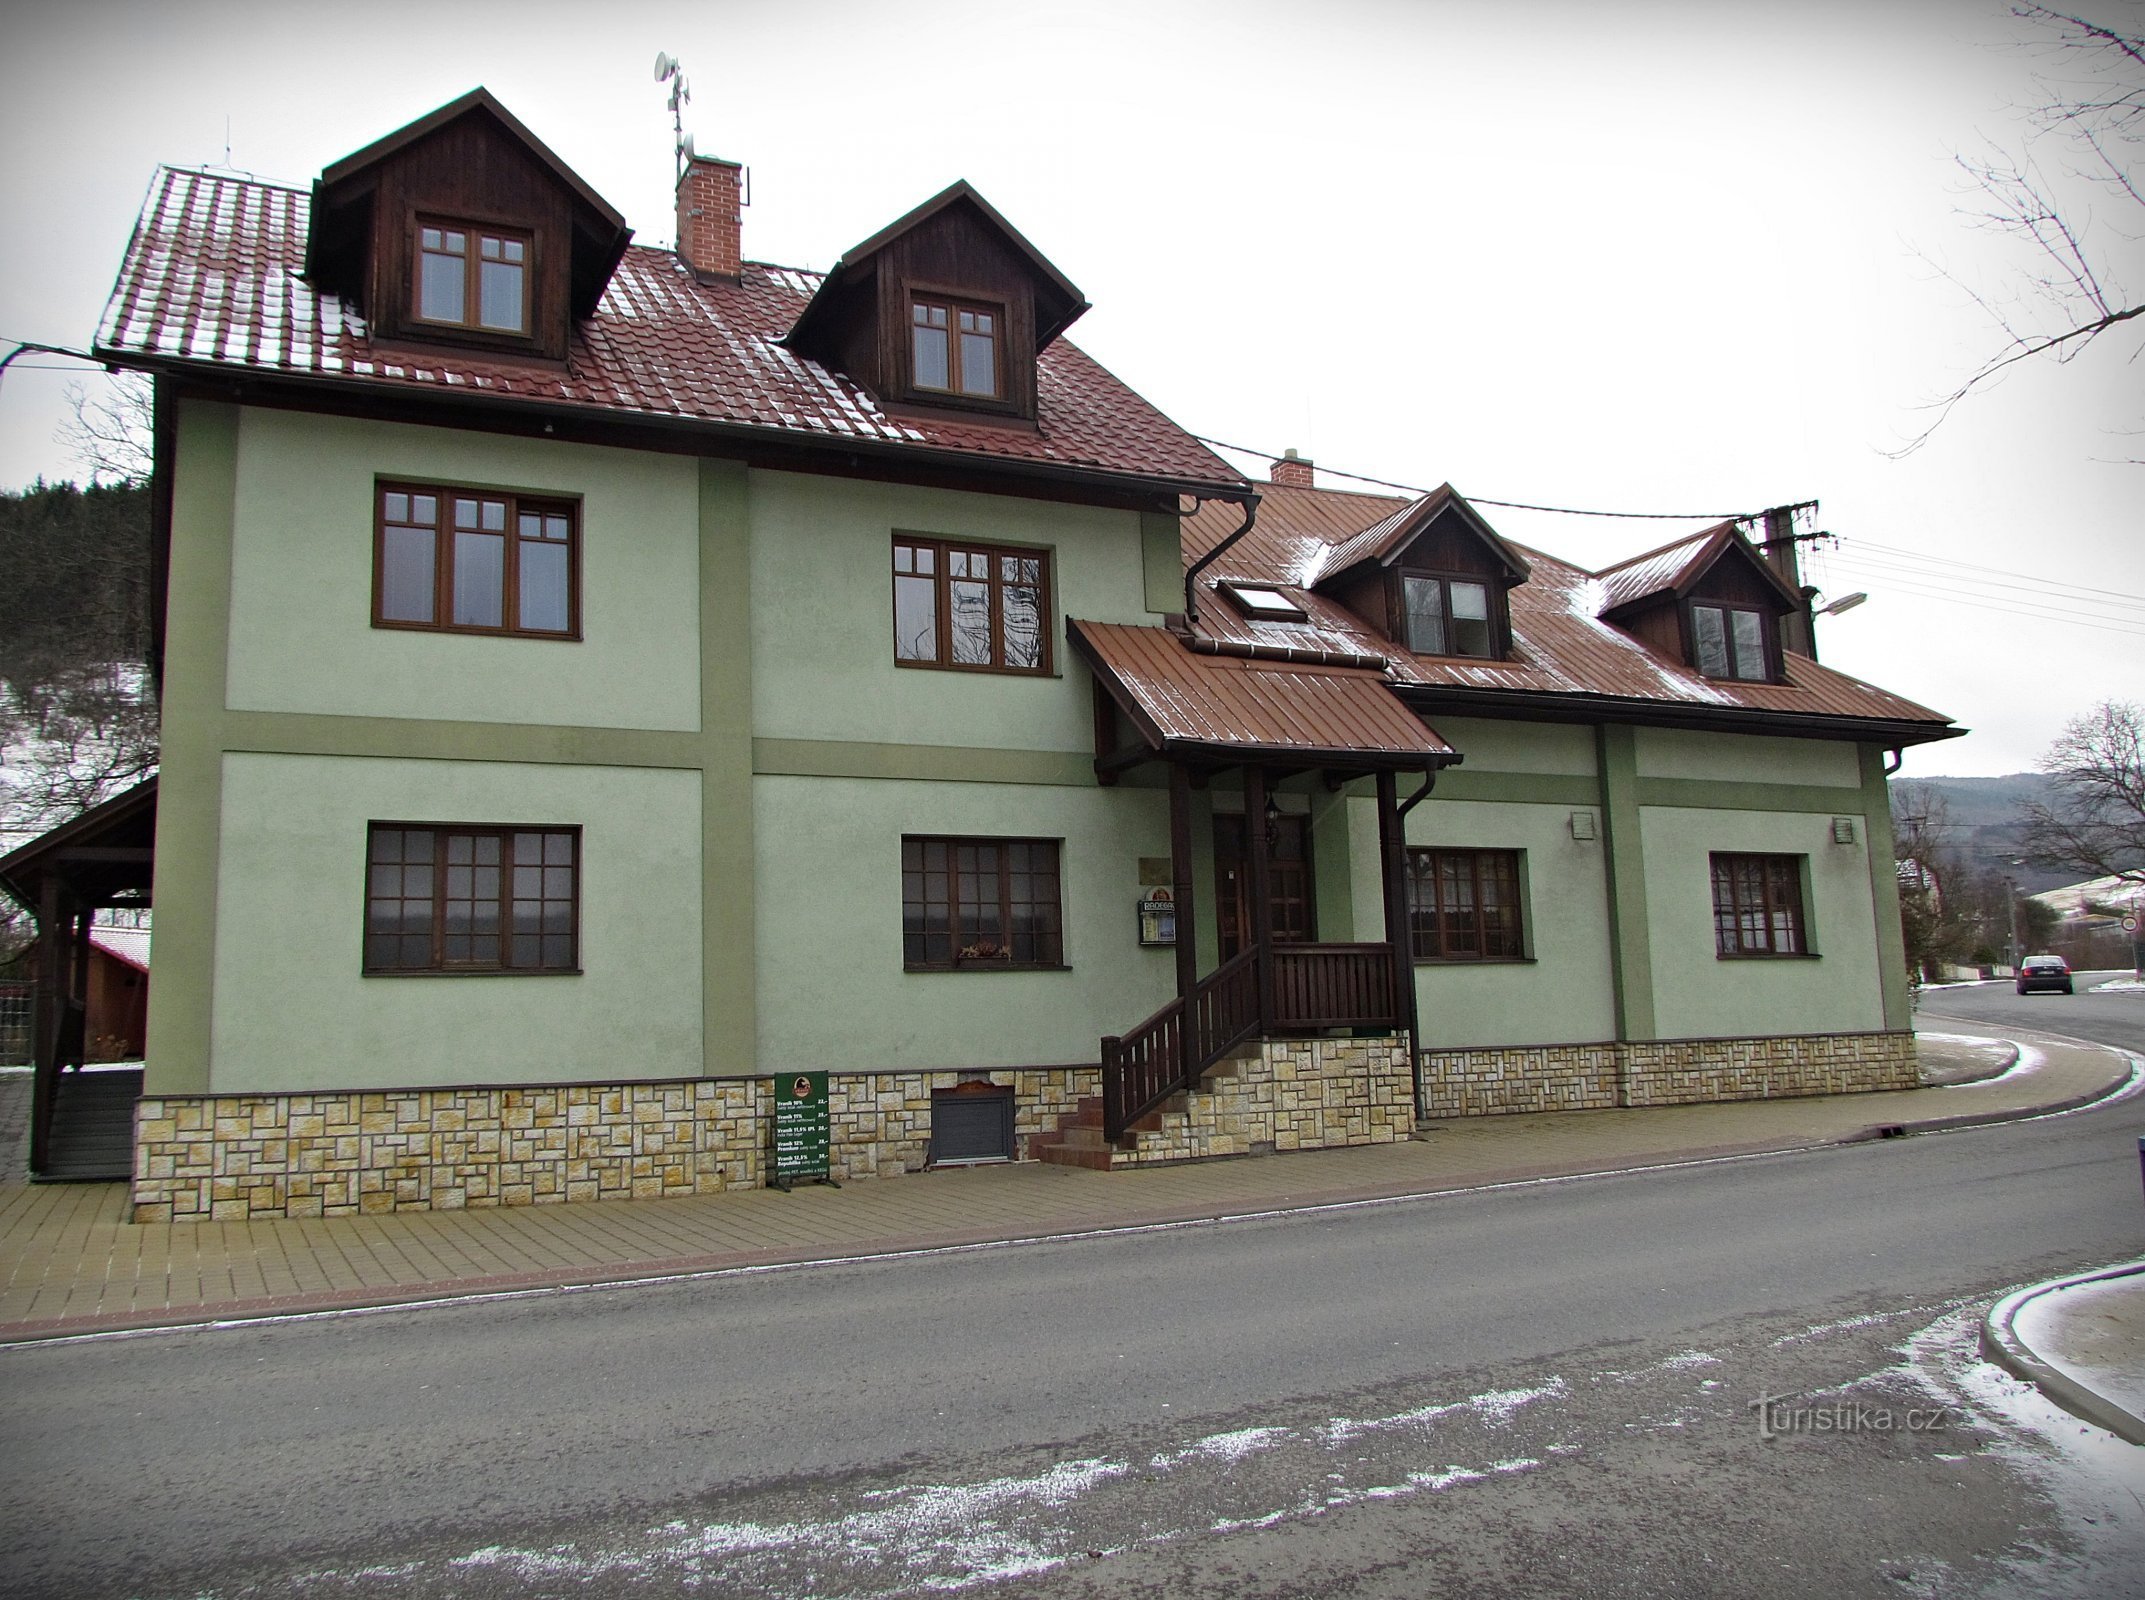 Πανσιόν Trnava, πανδοχείο και ζυθοποιείο Koníček